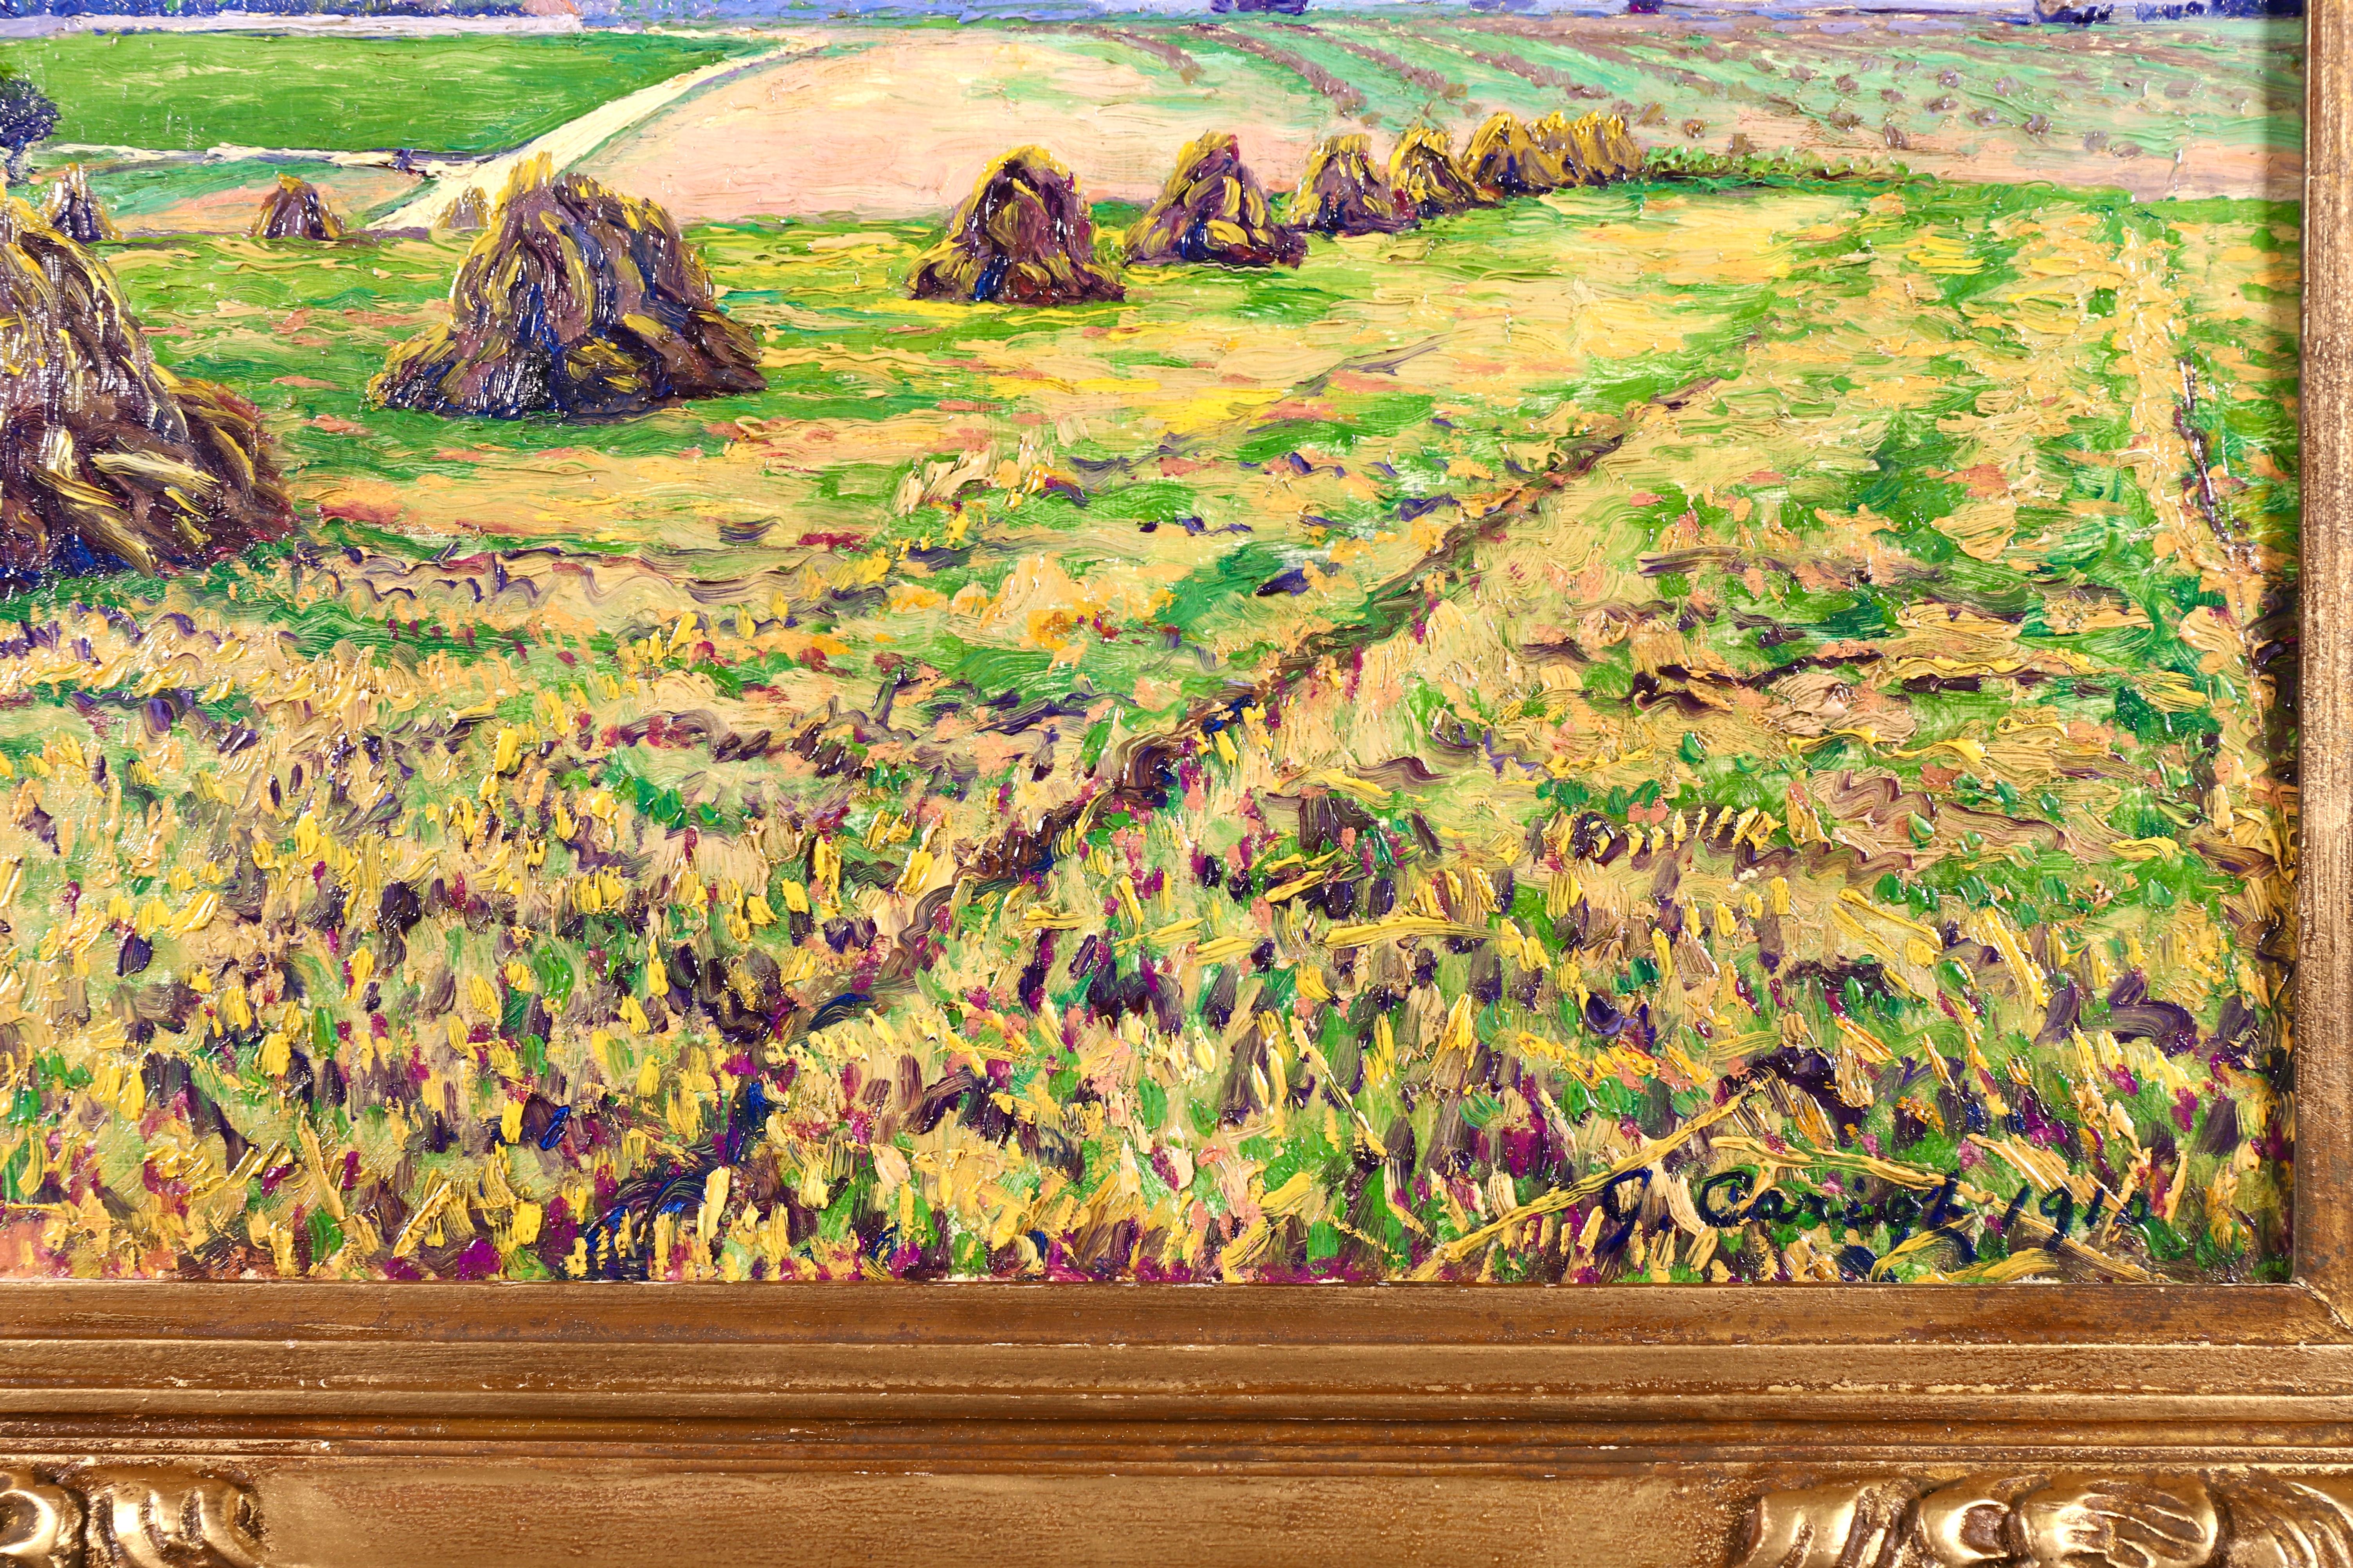 Ein wunderschönes Landschaftsgemälde in Öl auf Leinwand des postimpressionistischen Malers Gustave Camille Gaston Cariot:: das Haystacks auf den Feldern am Ende der Ernte darstellt. Signiert und datiert 1910 unten rechts. Dieses Gemälde ist derzeit